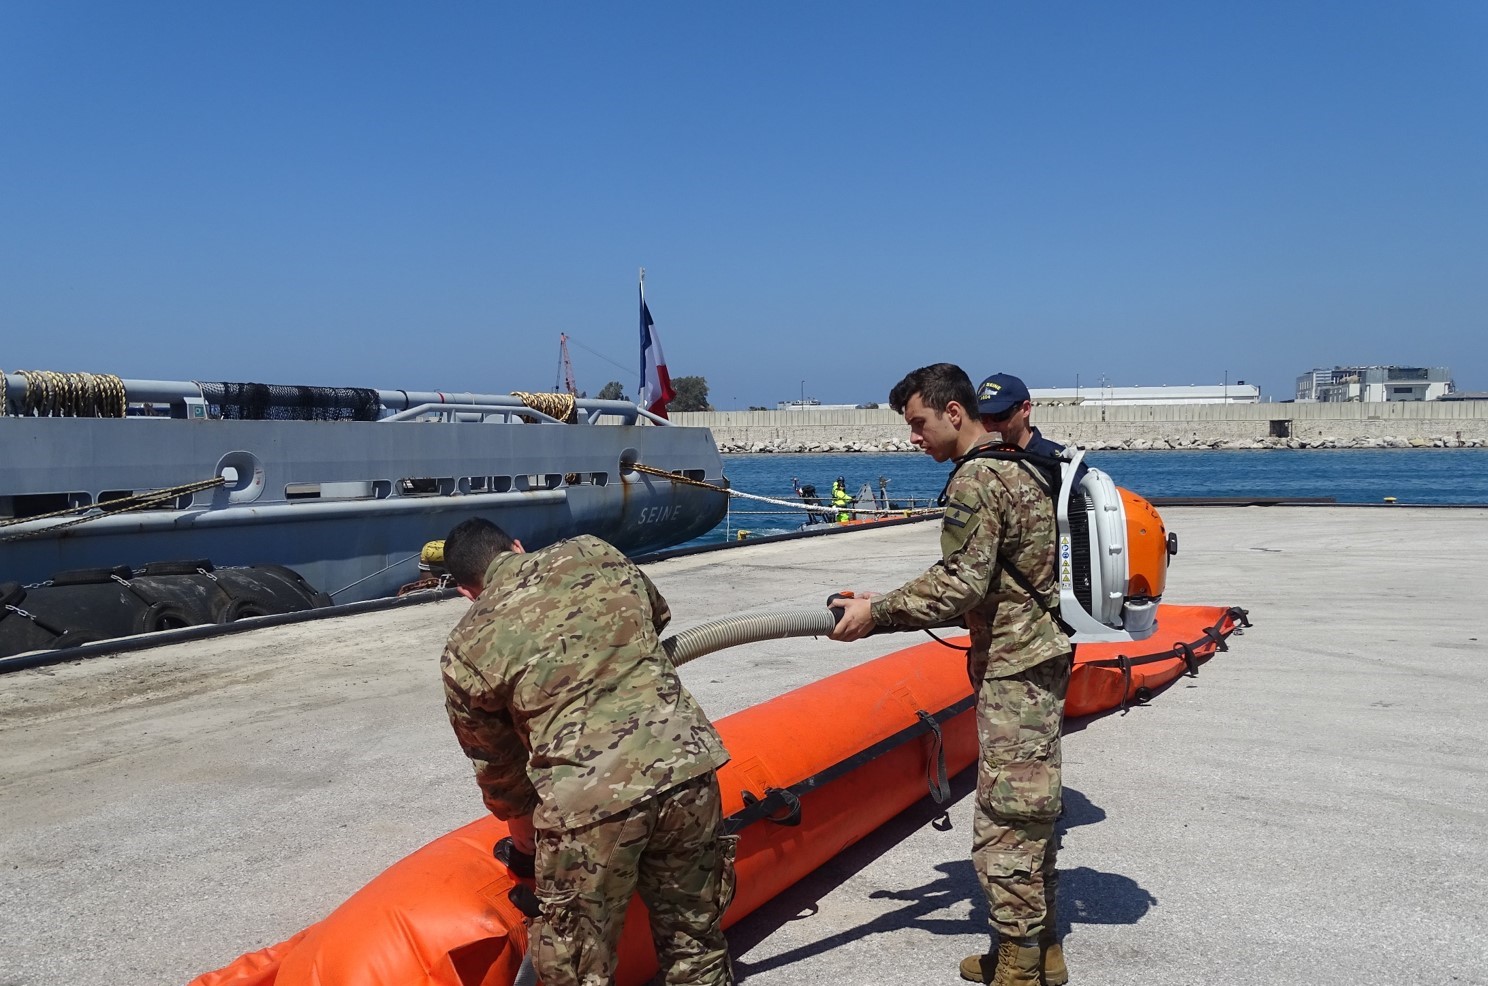  Méditerranée orientale – Le BSAM Seine participe à l’activité de coopération opérationnelle CEDRE BLEU